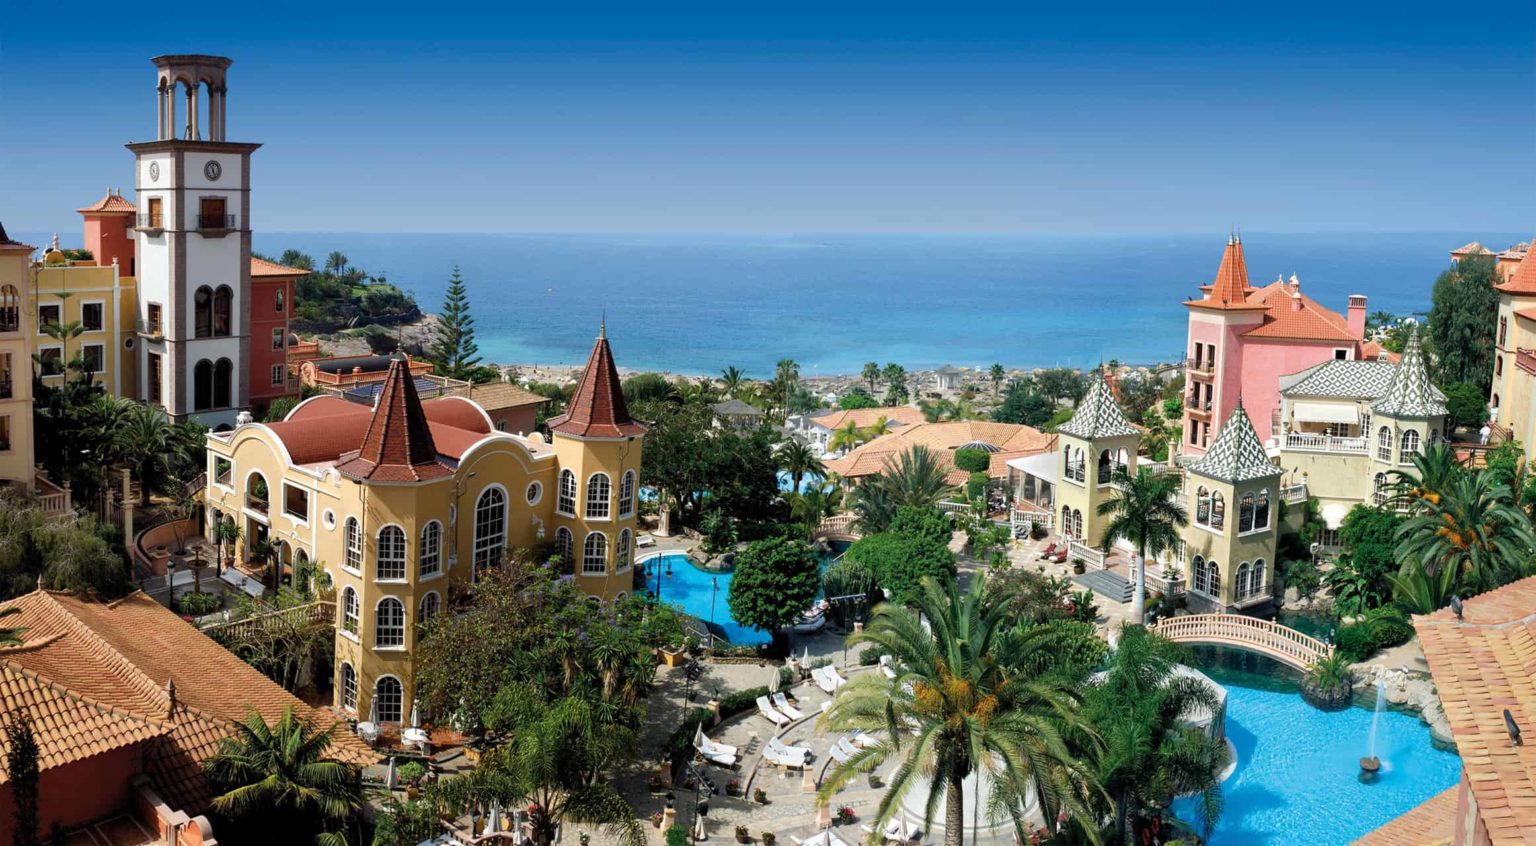 Gran Hotel Bahia del Duque overlooking Playa del Duque beach